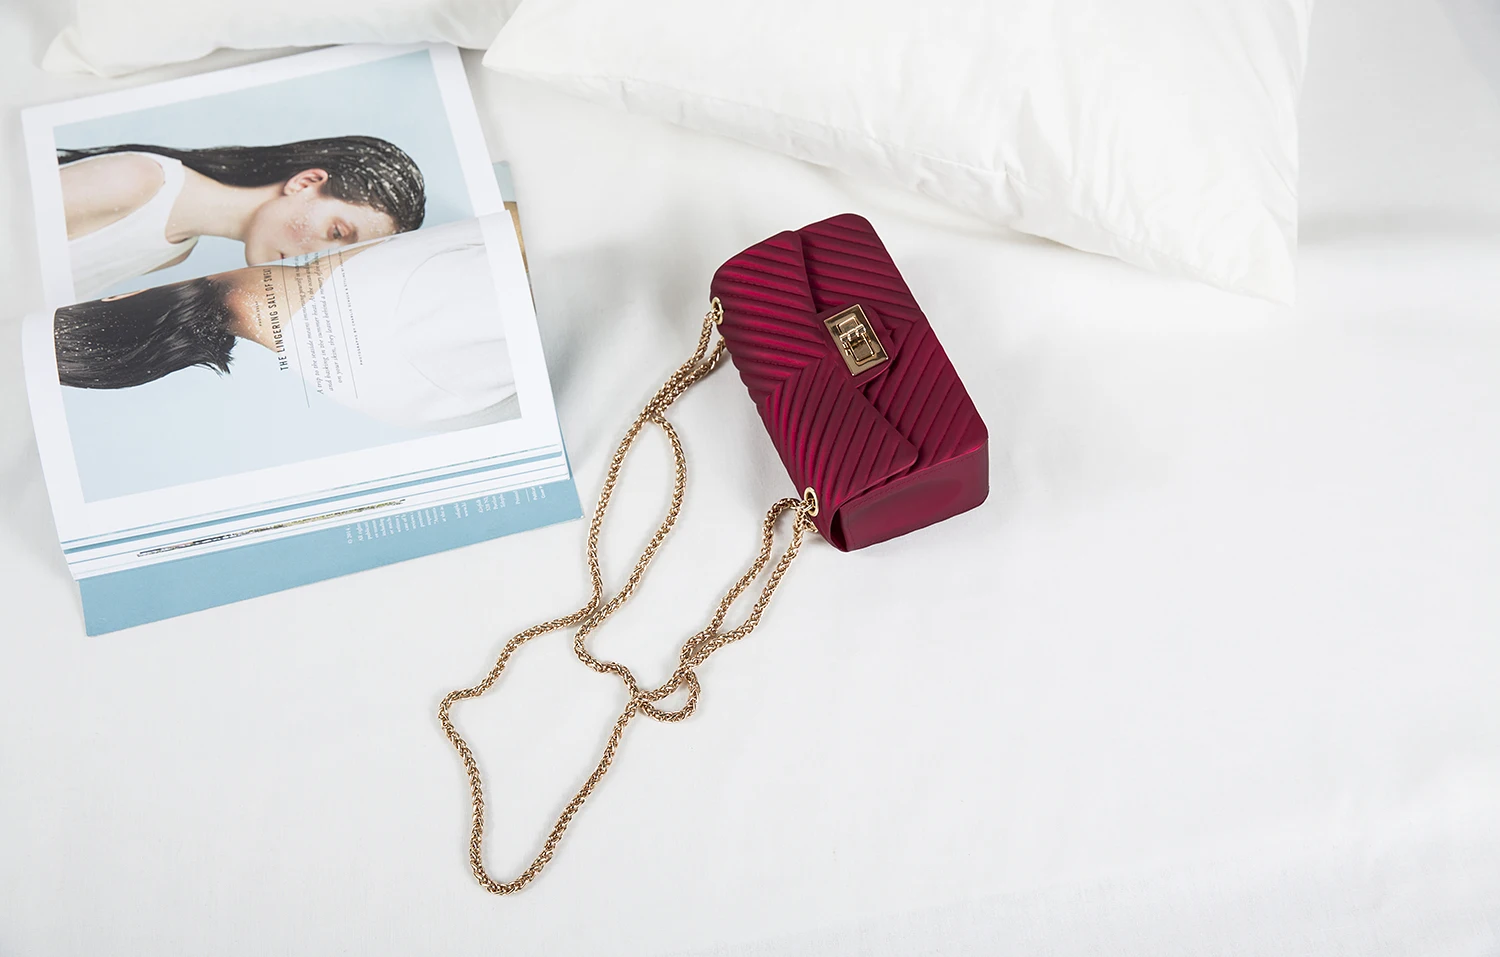 TekiEssica сумка-портфель винно-красная Желейная Прозрачная ПВХ сумка конфетного цвета мини-хлопушка сумка женская сумка через плечо